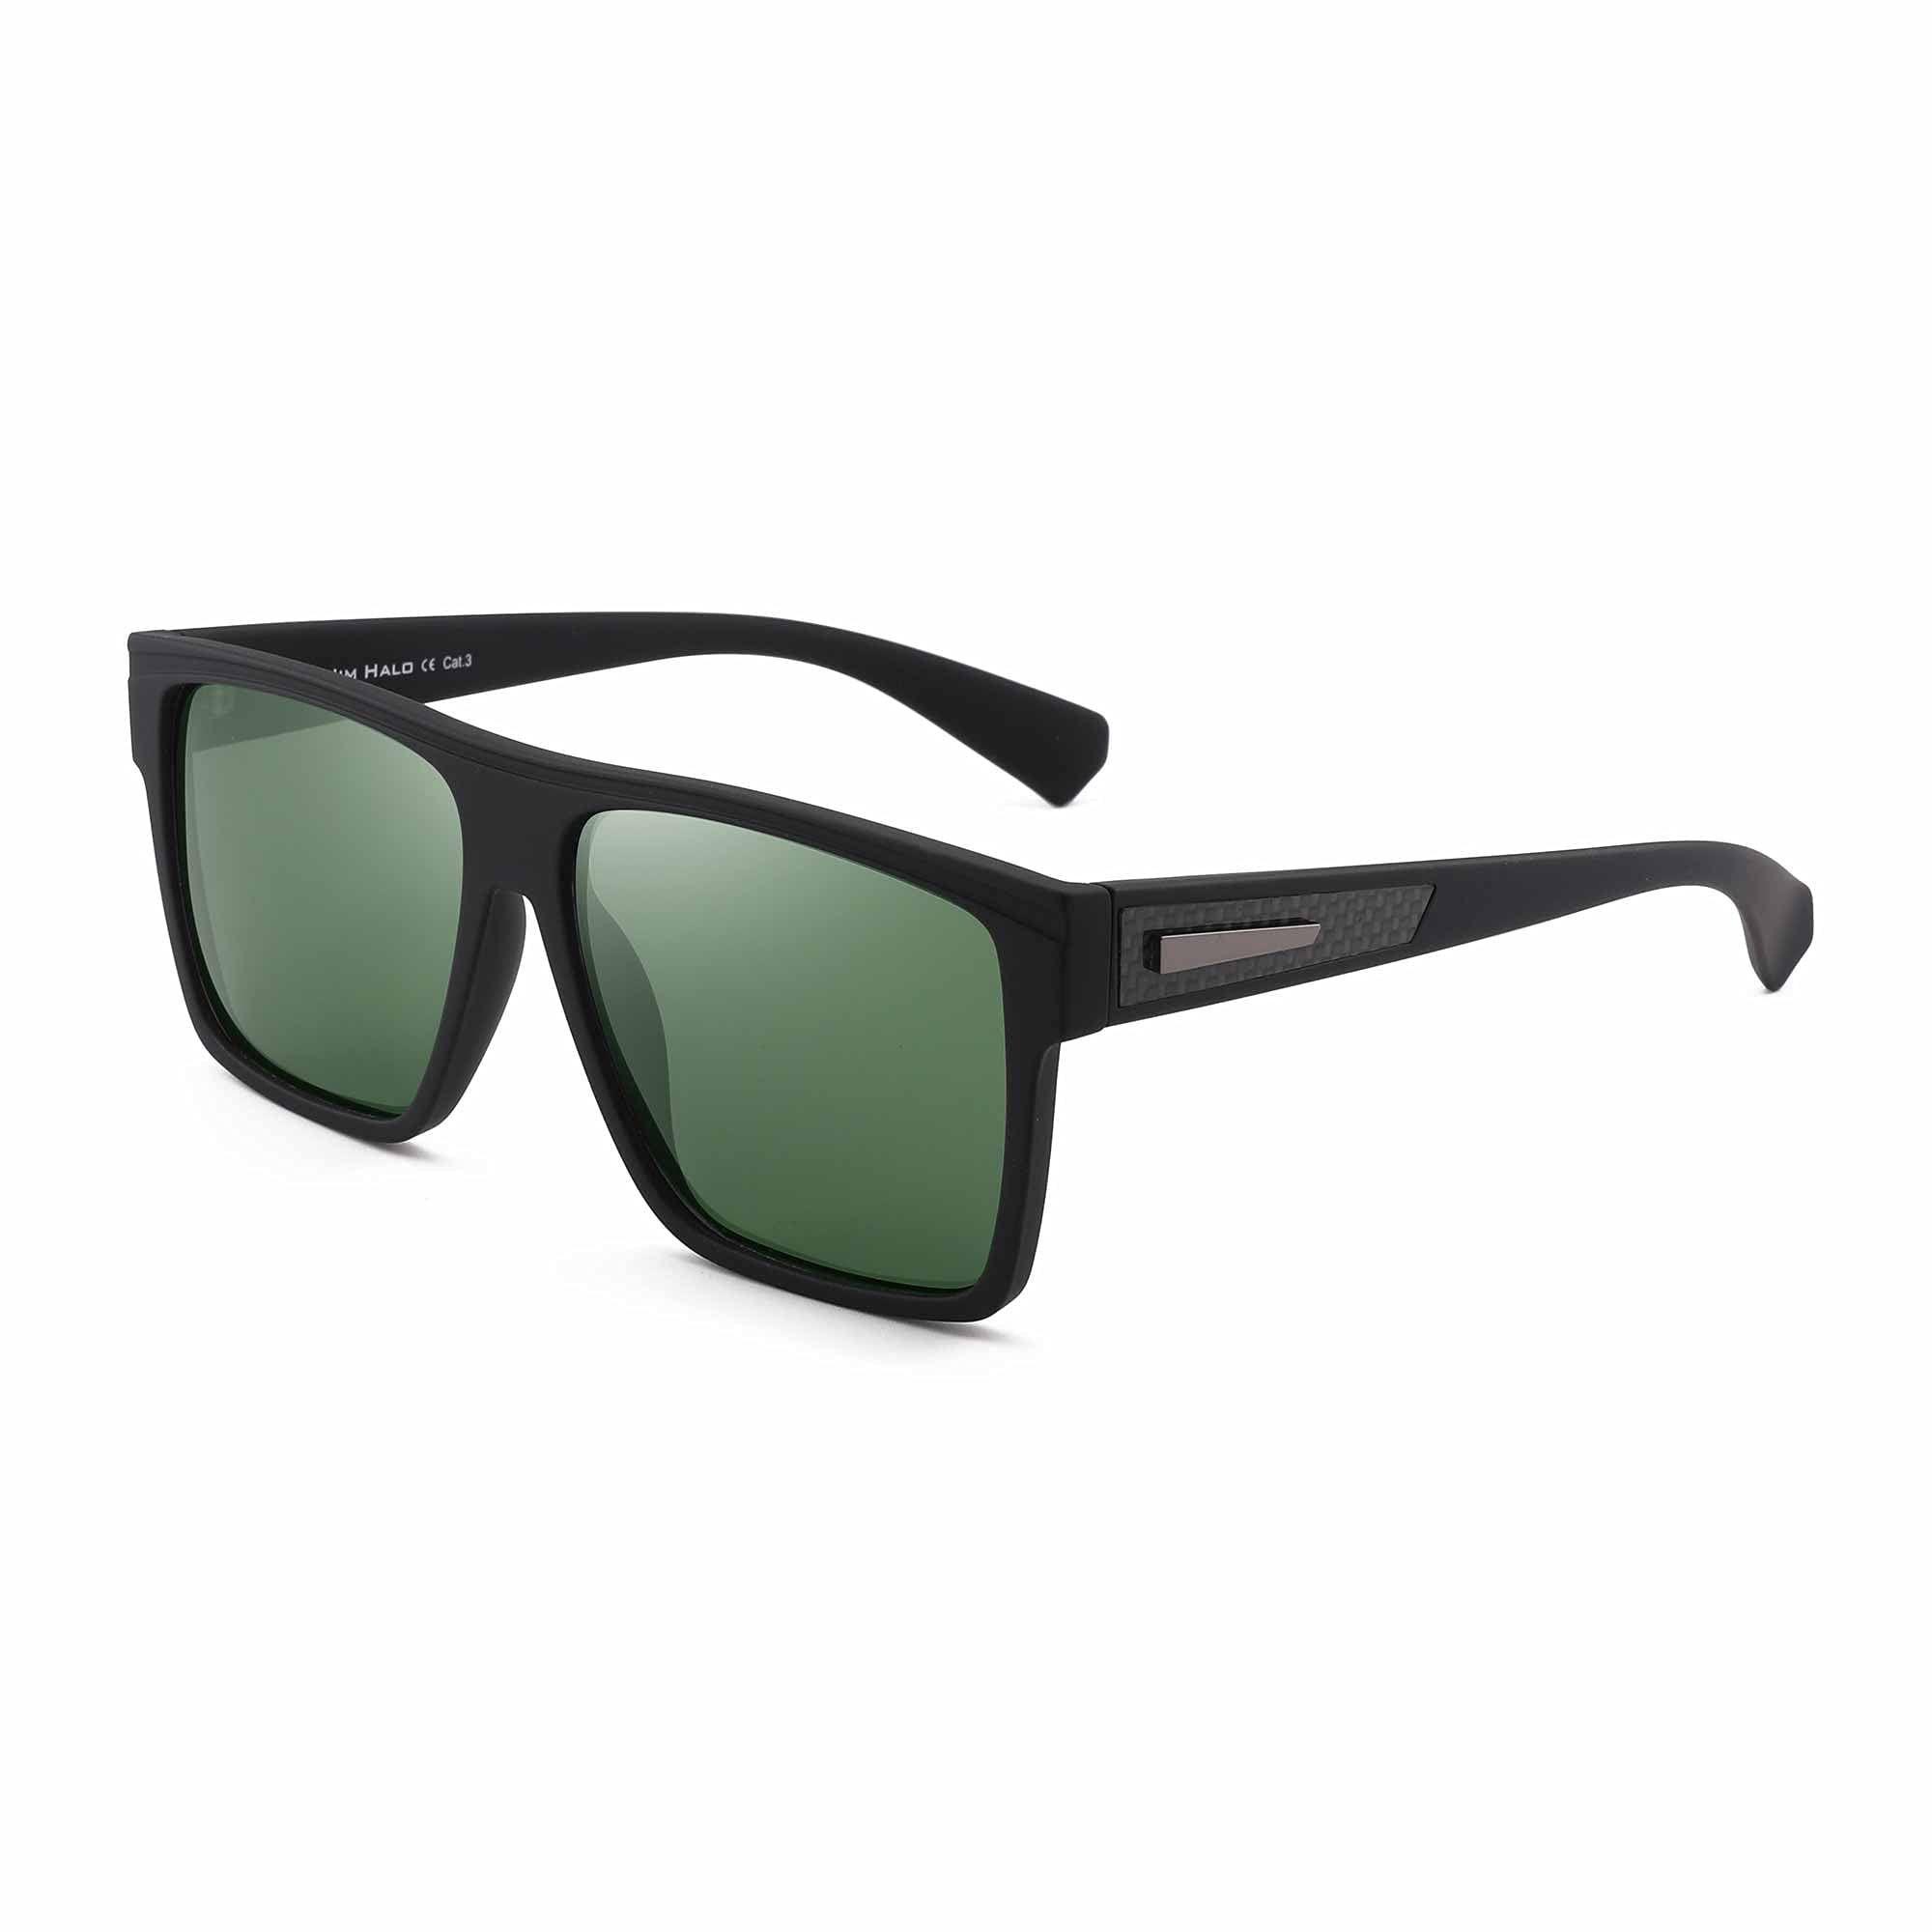 JIM HALO Retro Polarized Sunglasses Men Women Flat Top Square Driving  Glasses（Matte Black Frame / Polarized Green Lens）